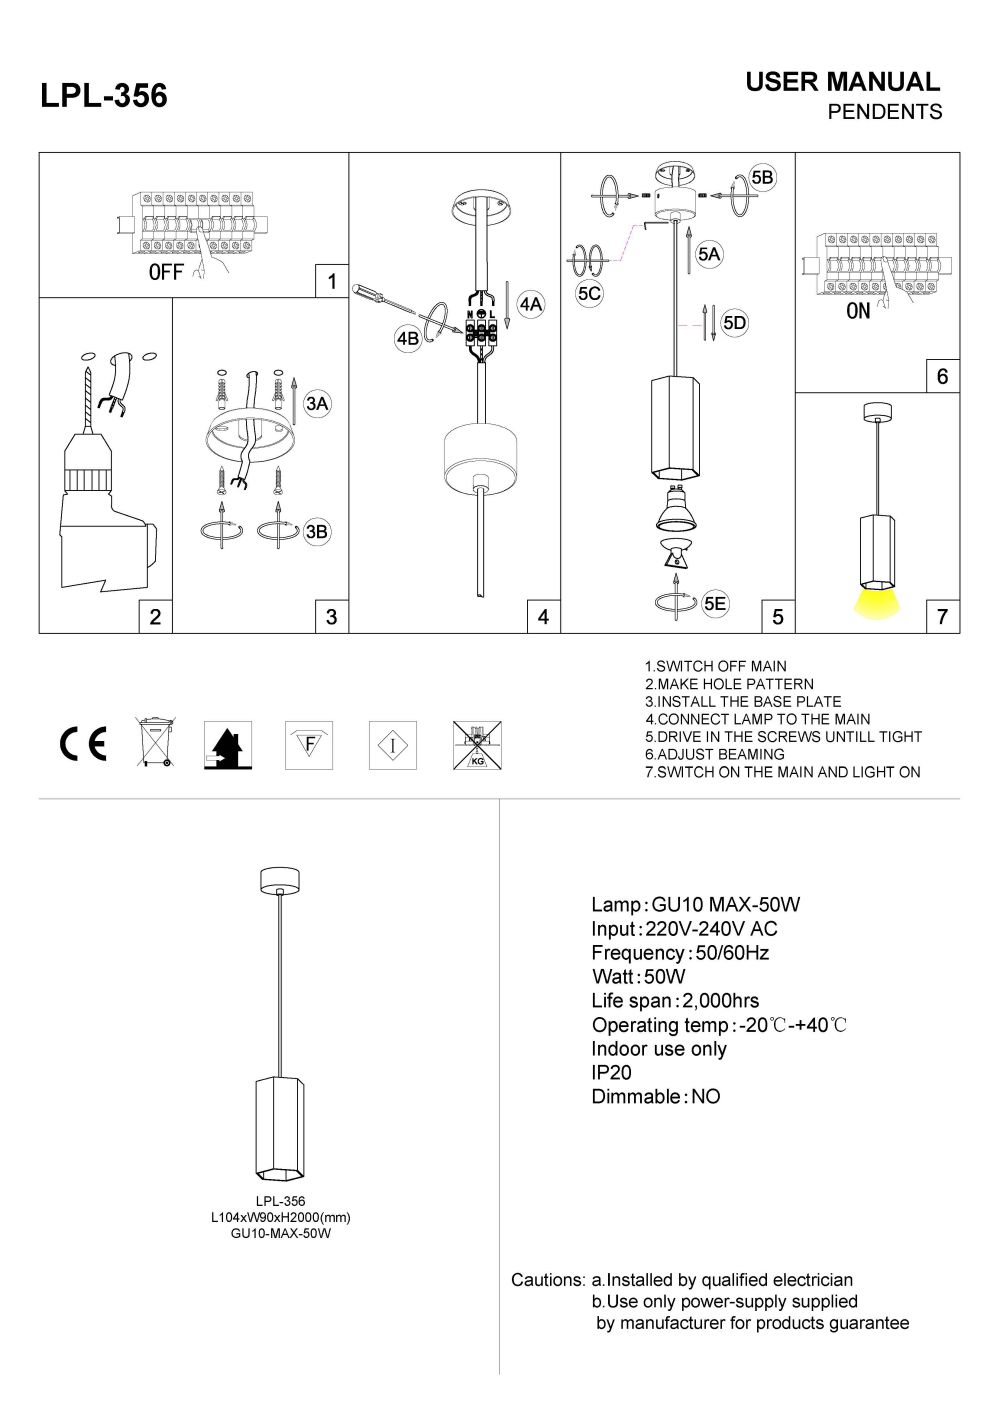 LPL-356 LED pendant light installation guide